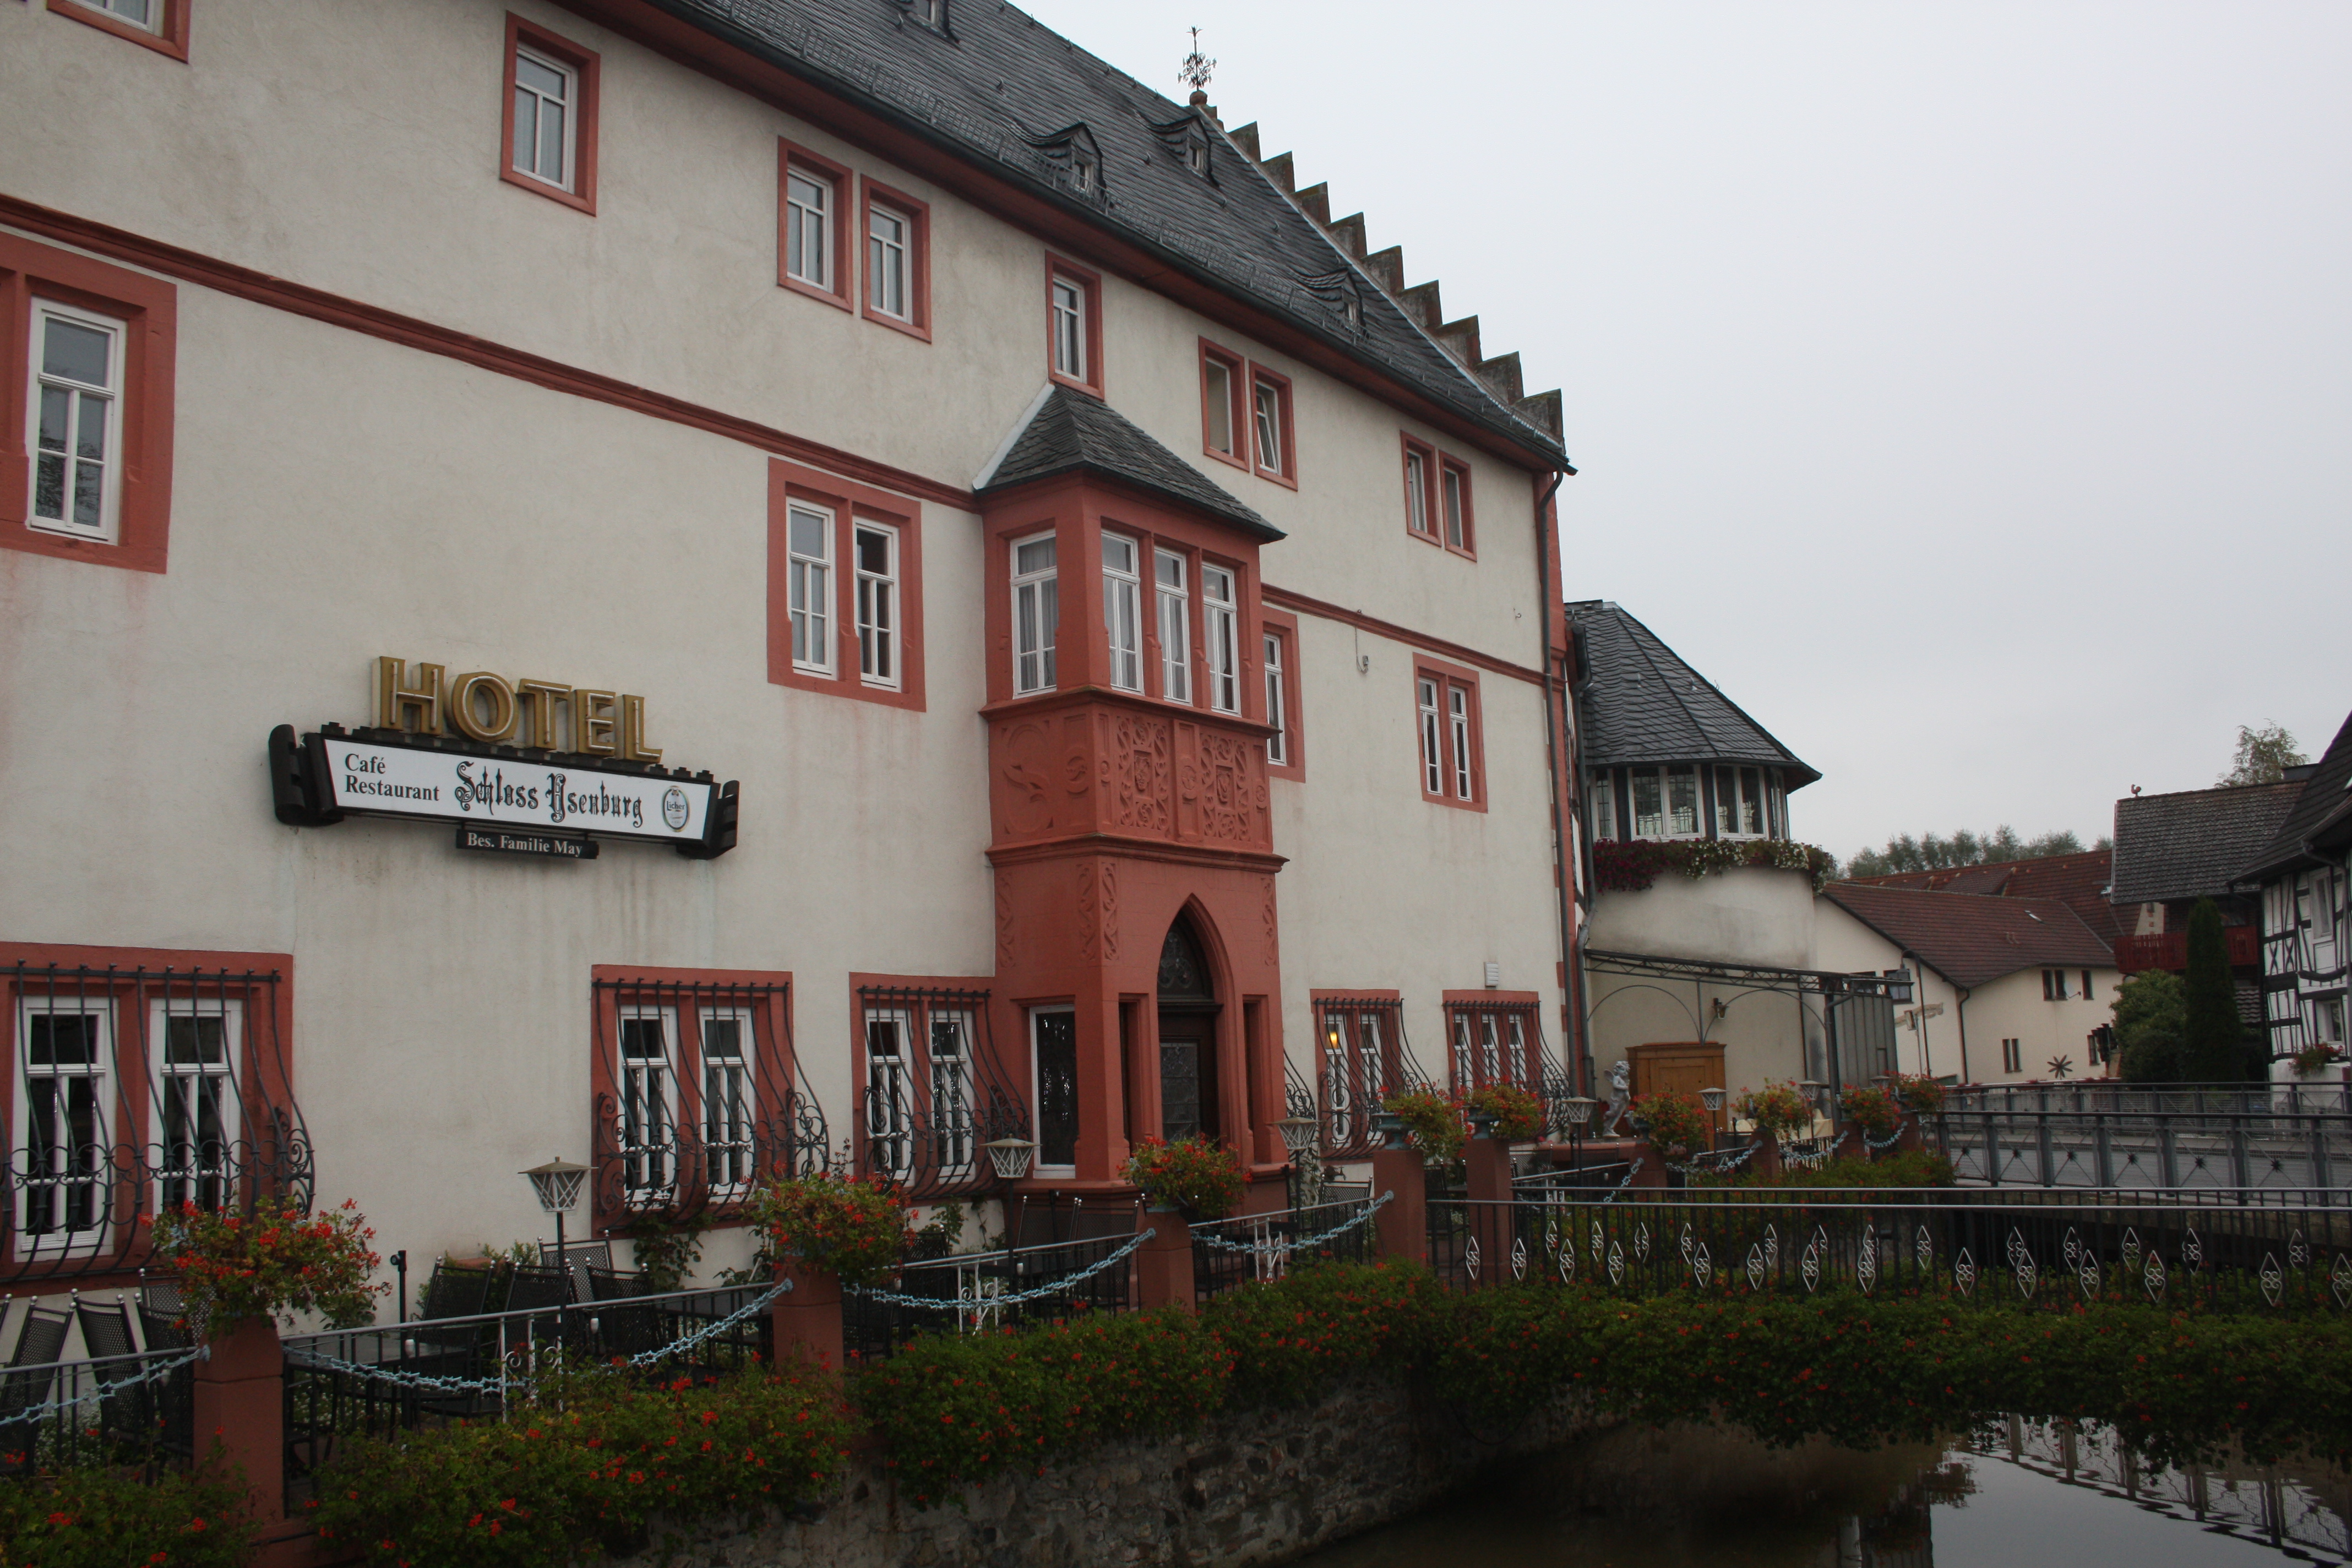 Außenansicht vom Hotel Restaurant Schloss Ysenburg in Florstadt, Ortsteil Staden.
